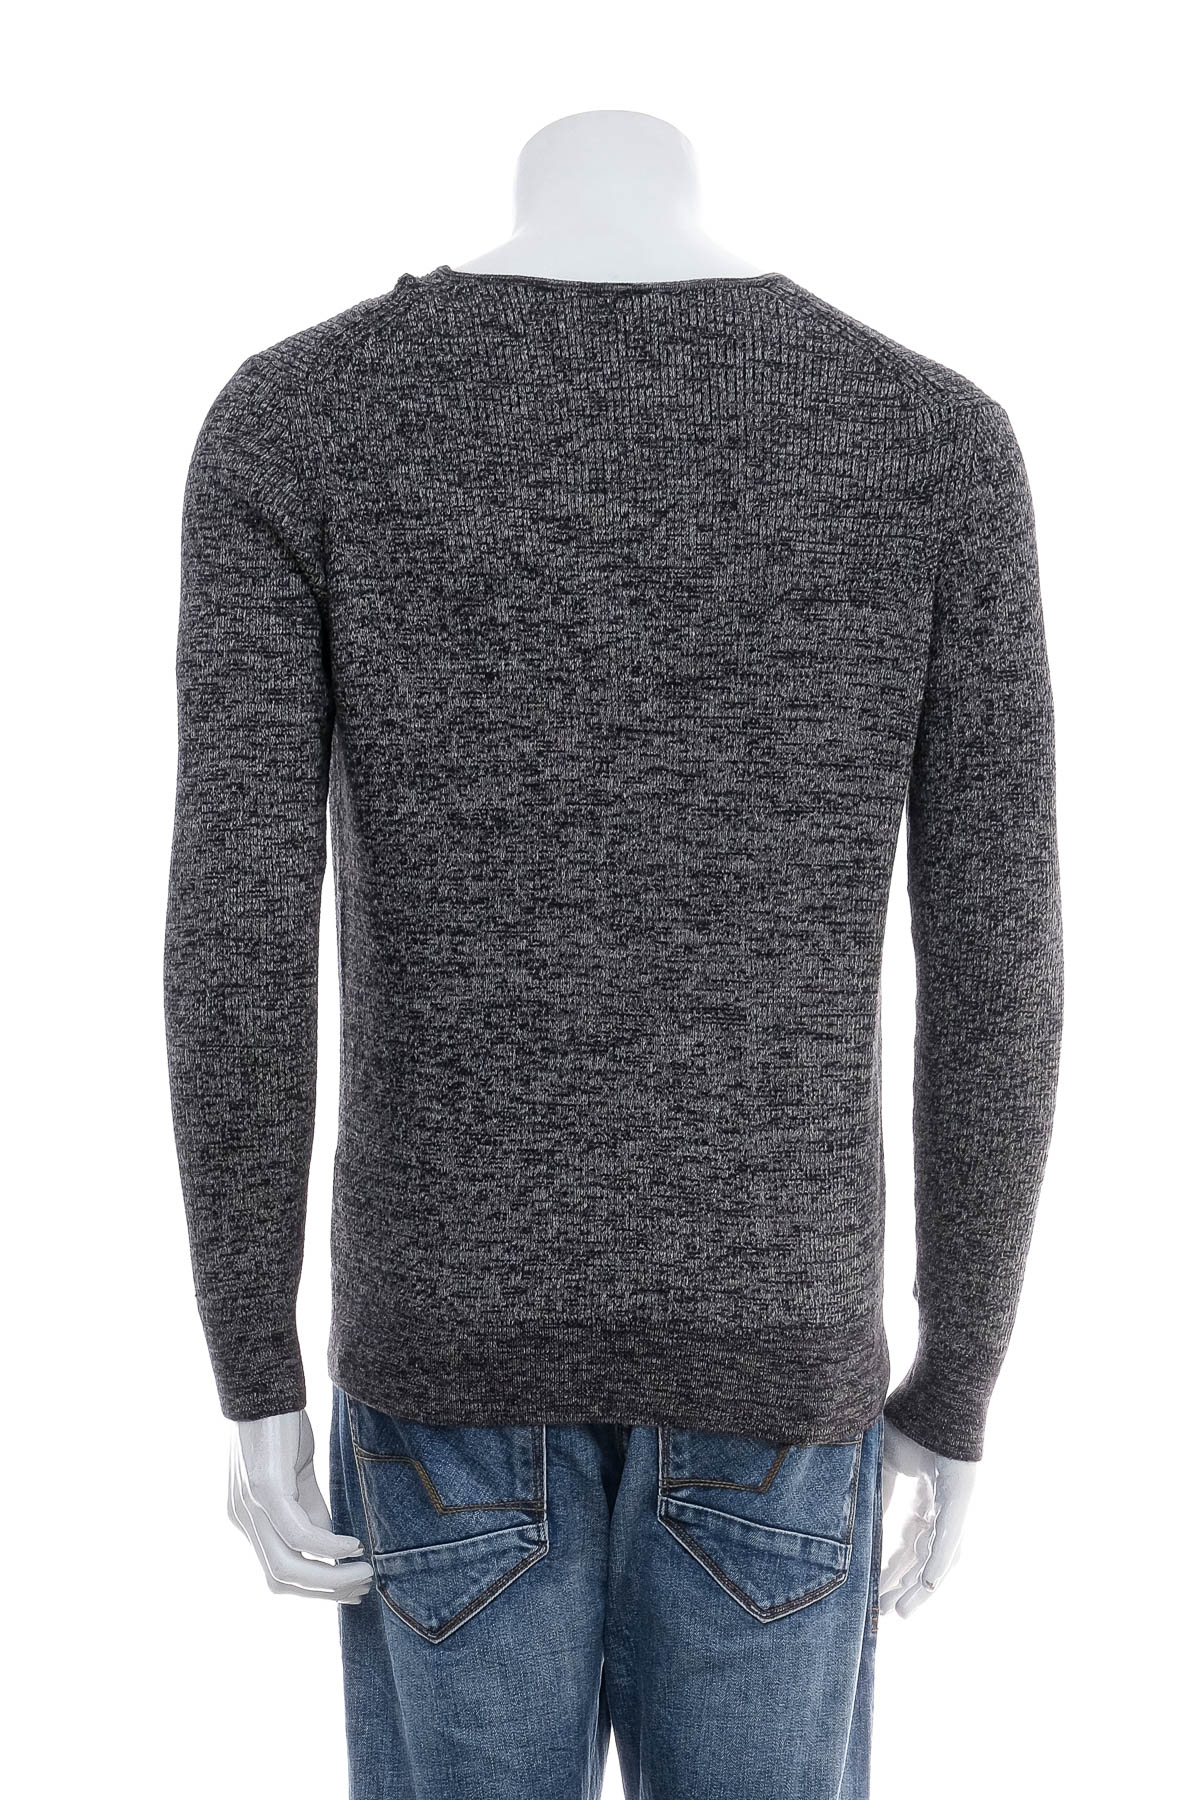 Men's sweater - DENVER HAYES - 1